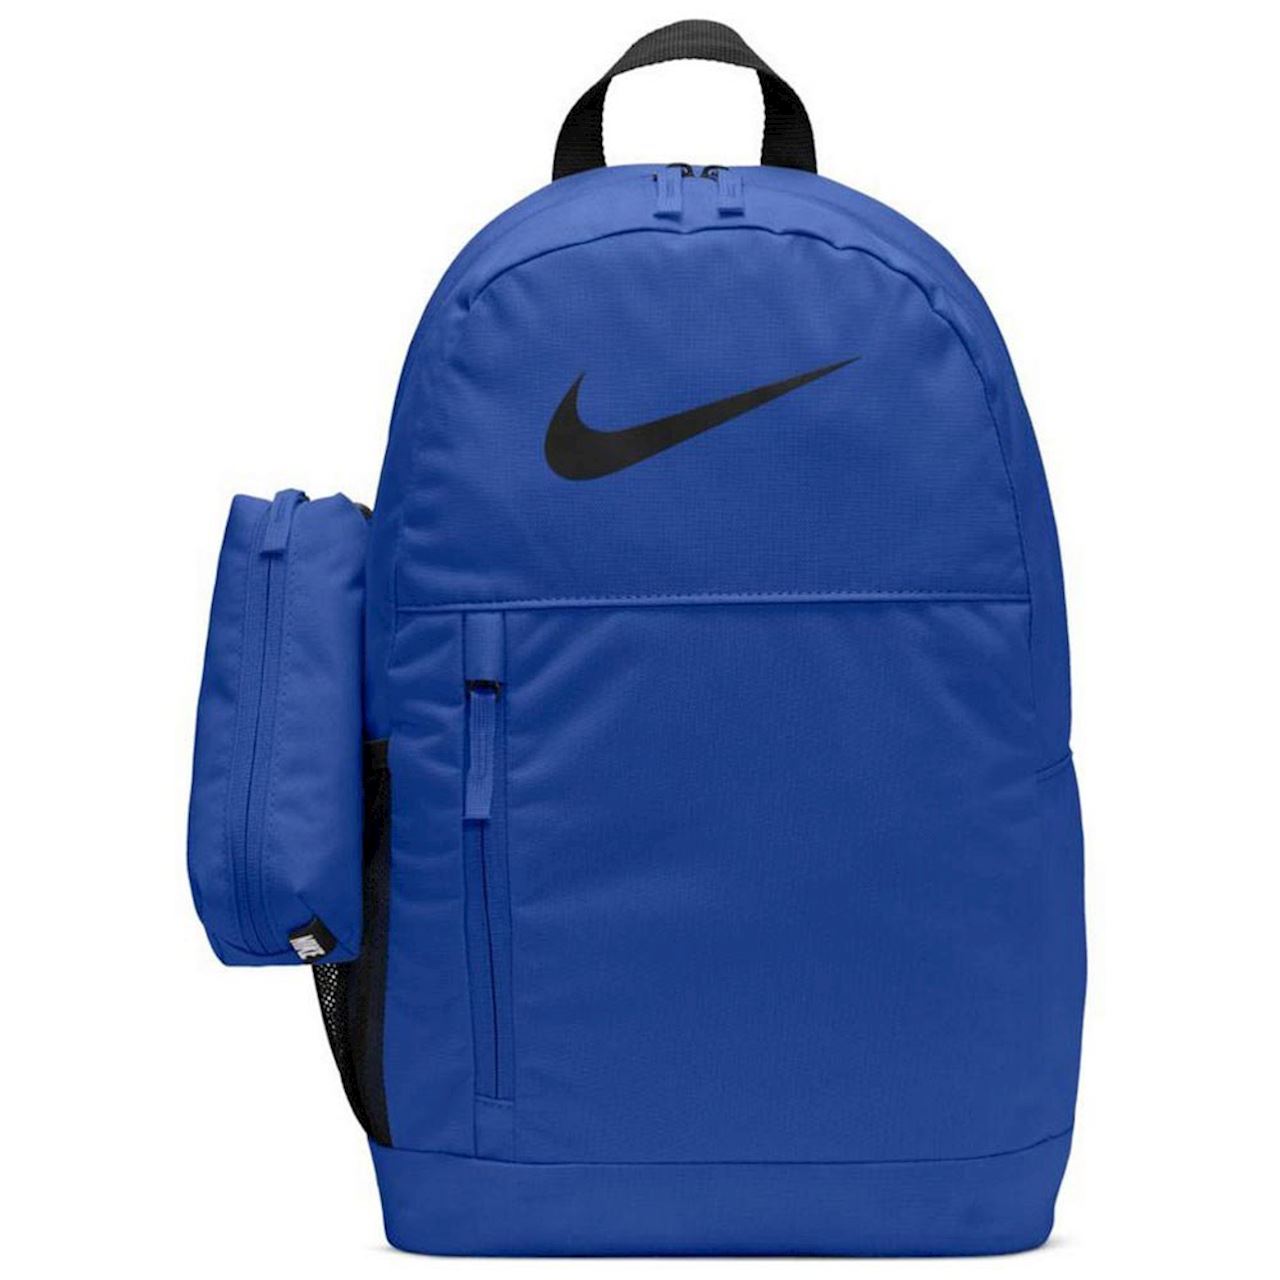 Plecak szkolny Youth Elemental niebieski Nike